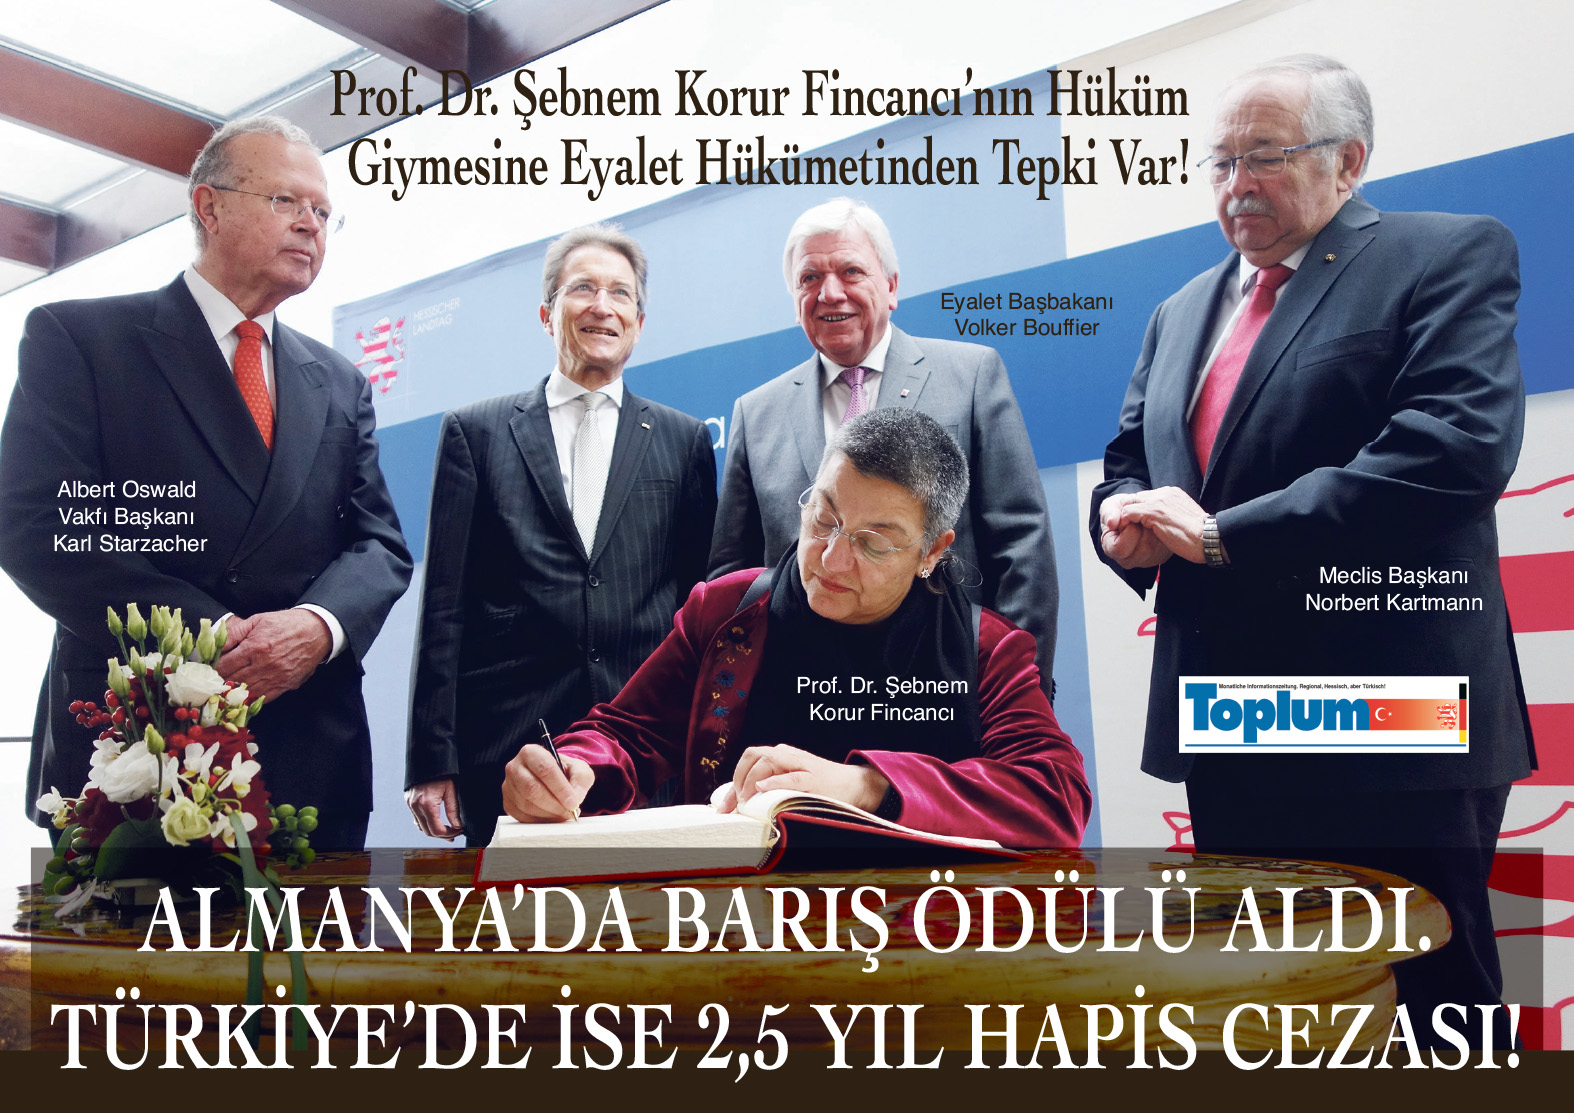 Hessen Barış Ödülü Sahibi Prof. Fincancı'ya Türkiye'de 2,5 Yıl Hapis Cezası